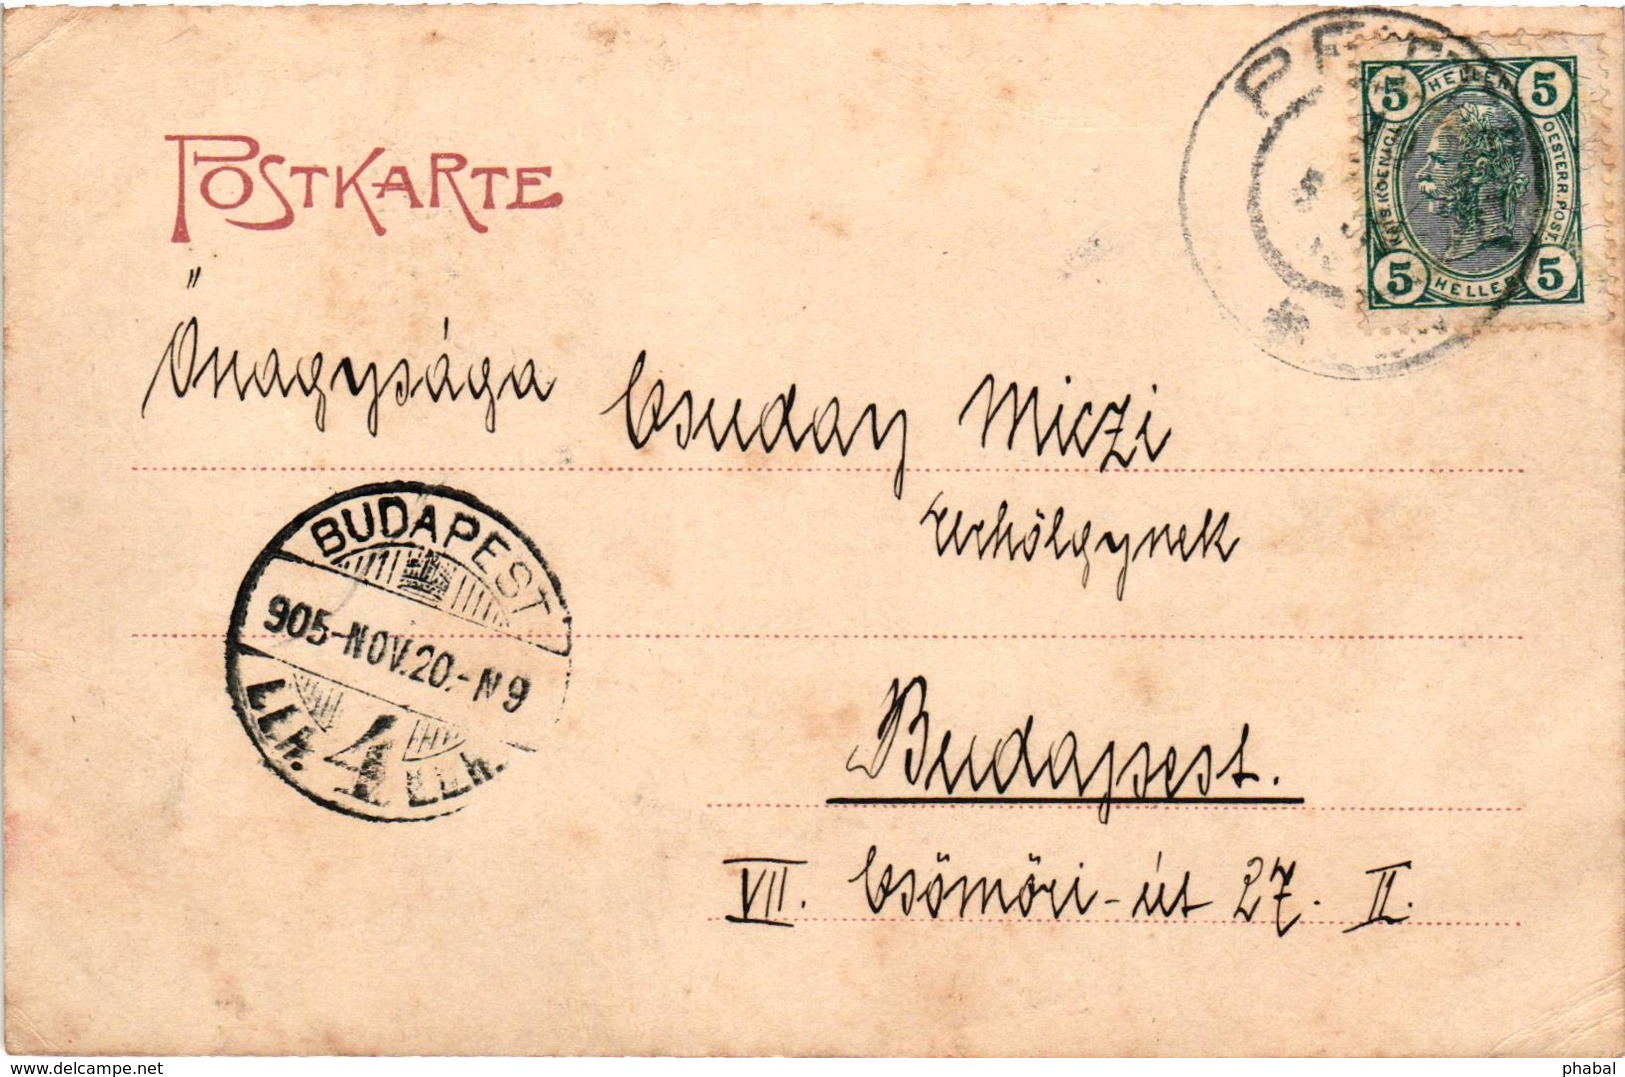 Slovenia, Ptuj, Pettau, Town Scene, Old Postcard 1905 - Eslovenia